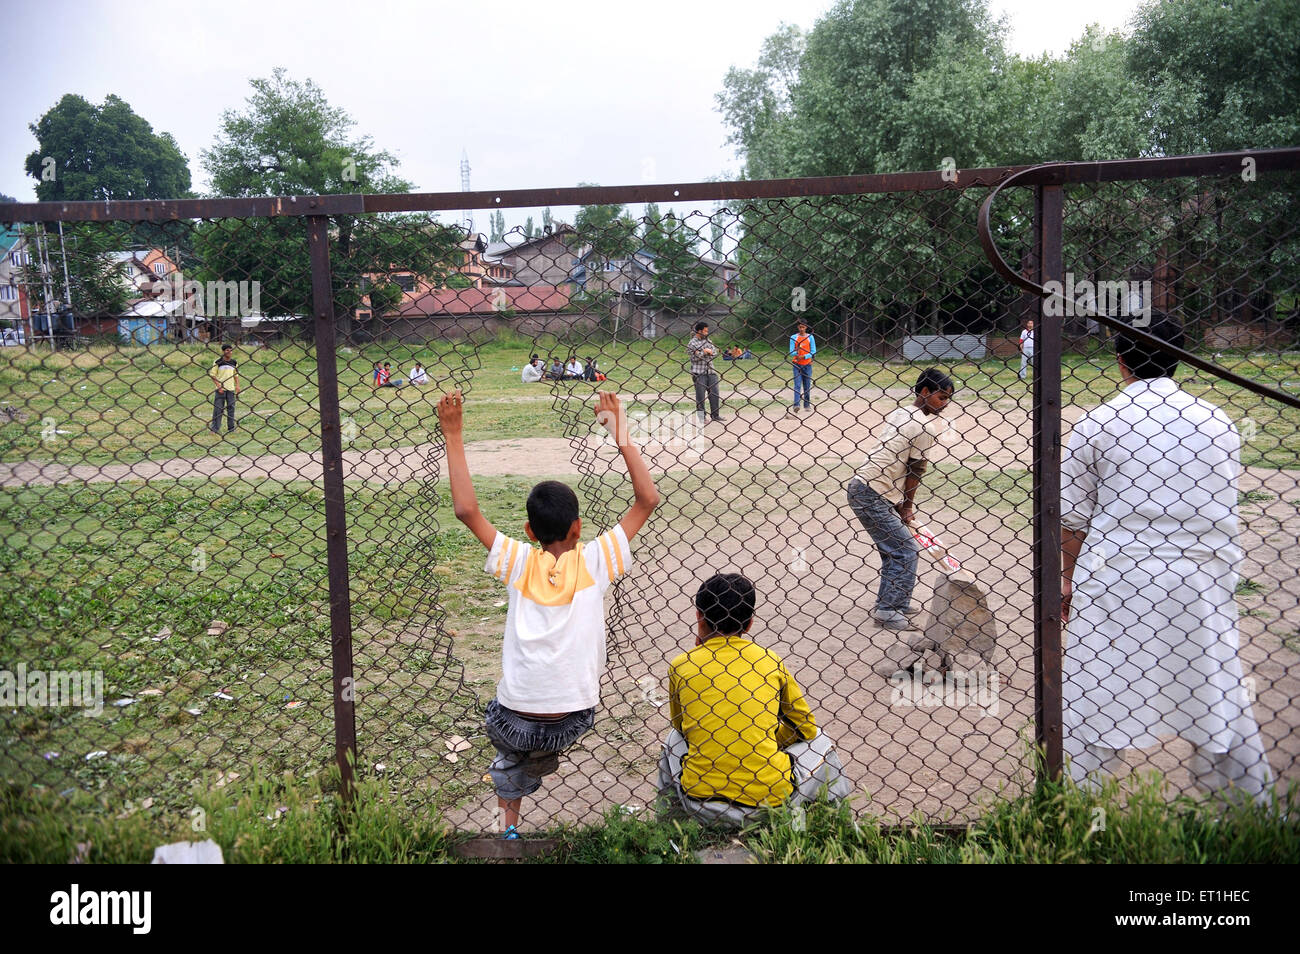 Les personnes jouant au cricket au sol, au Cachemire, au Jammu-et-Cachemire, territoire de l'Union, UT,Inde, Asie, Asie, Indien Banque D'Images